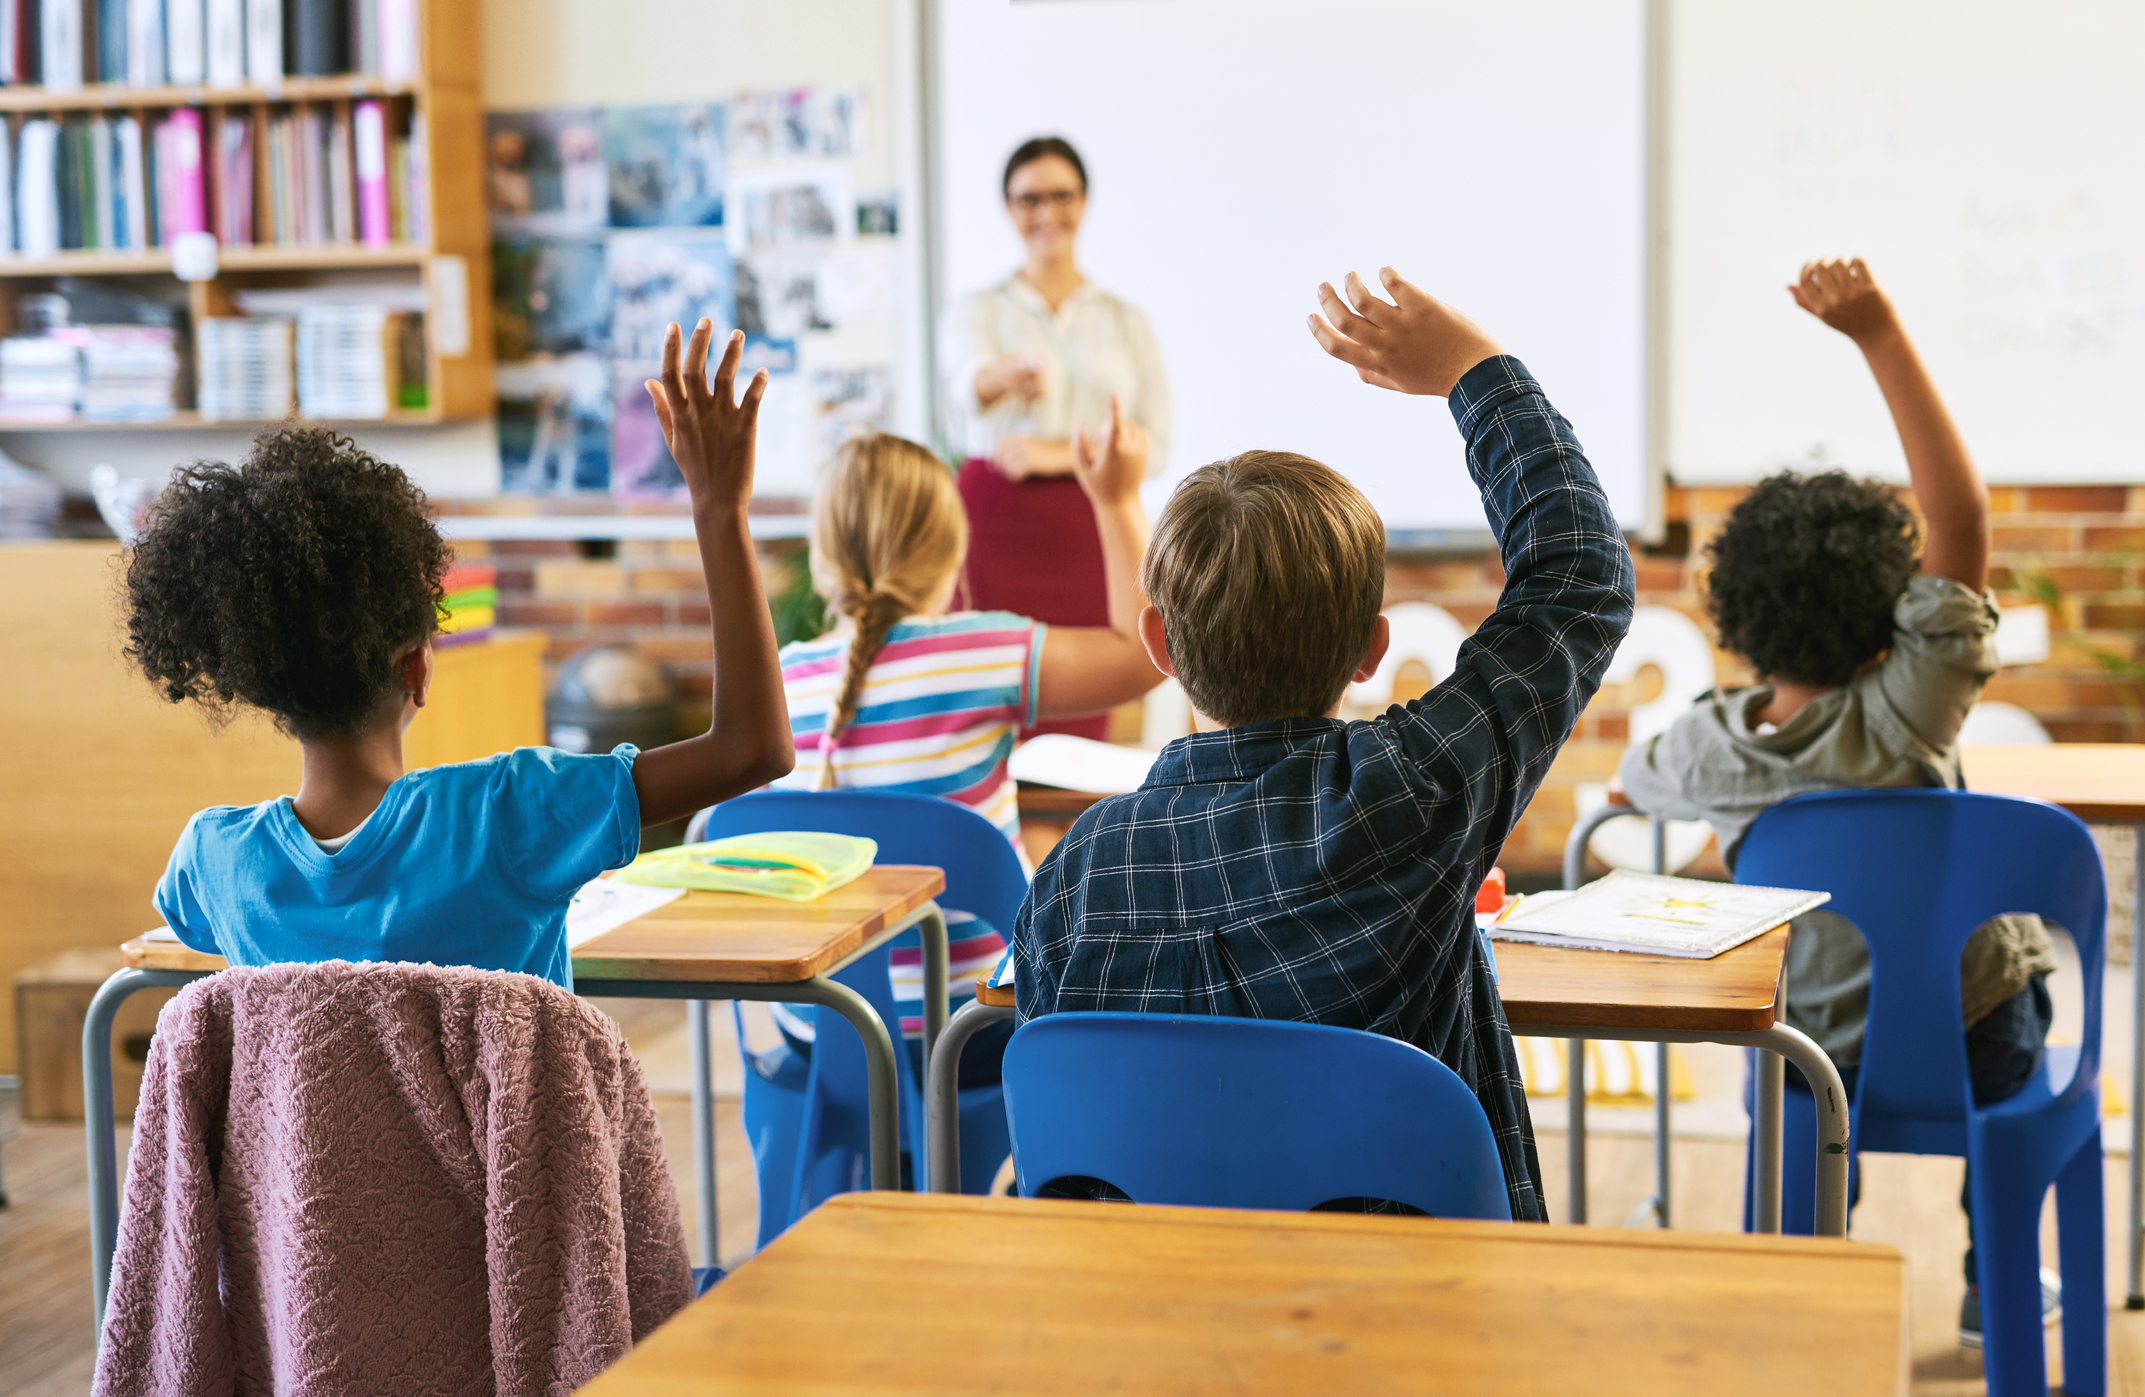 Children raising hands in a classroom